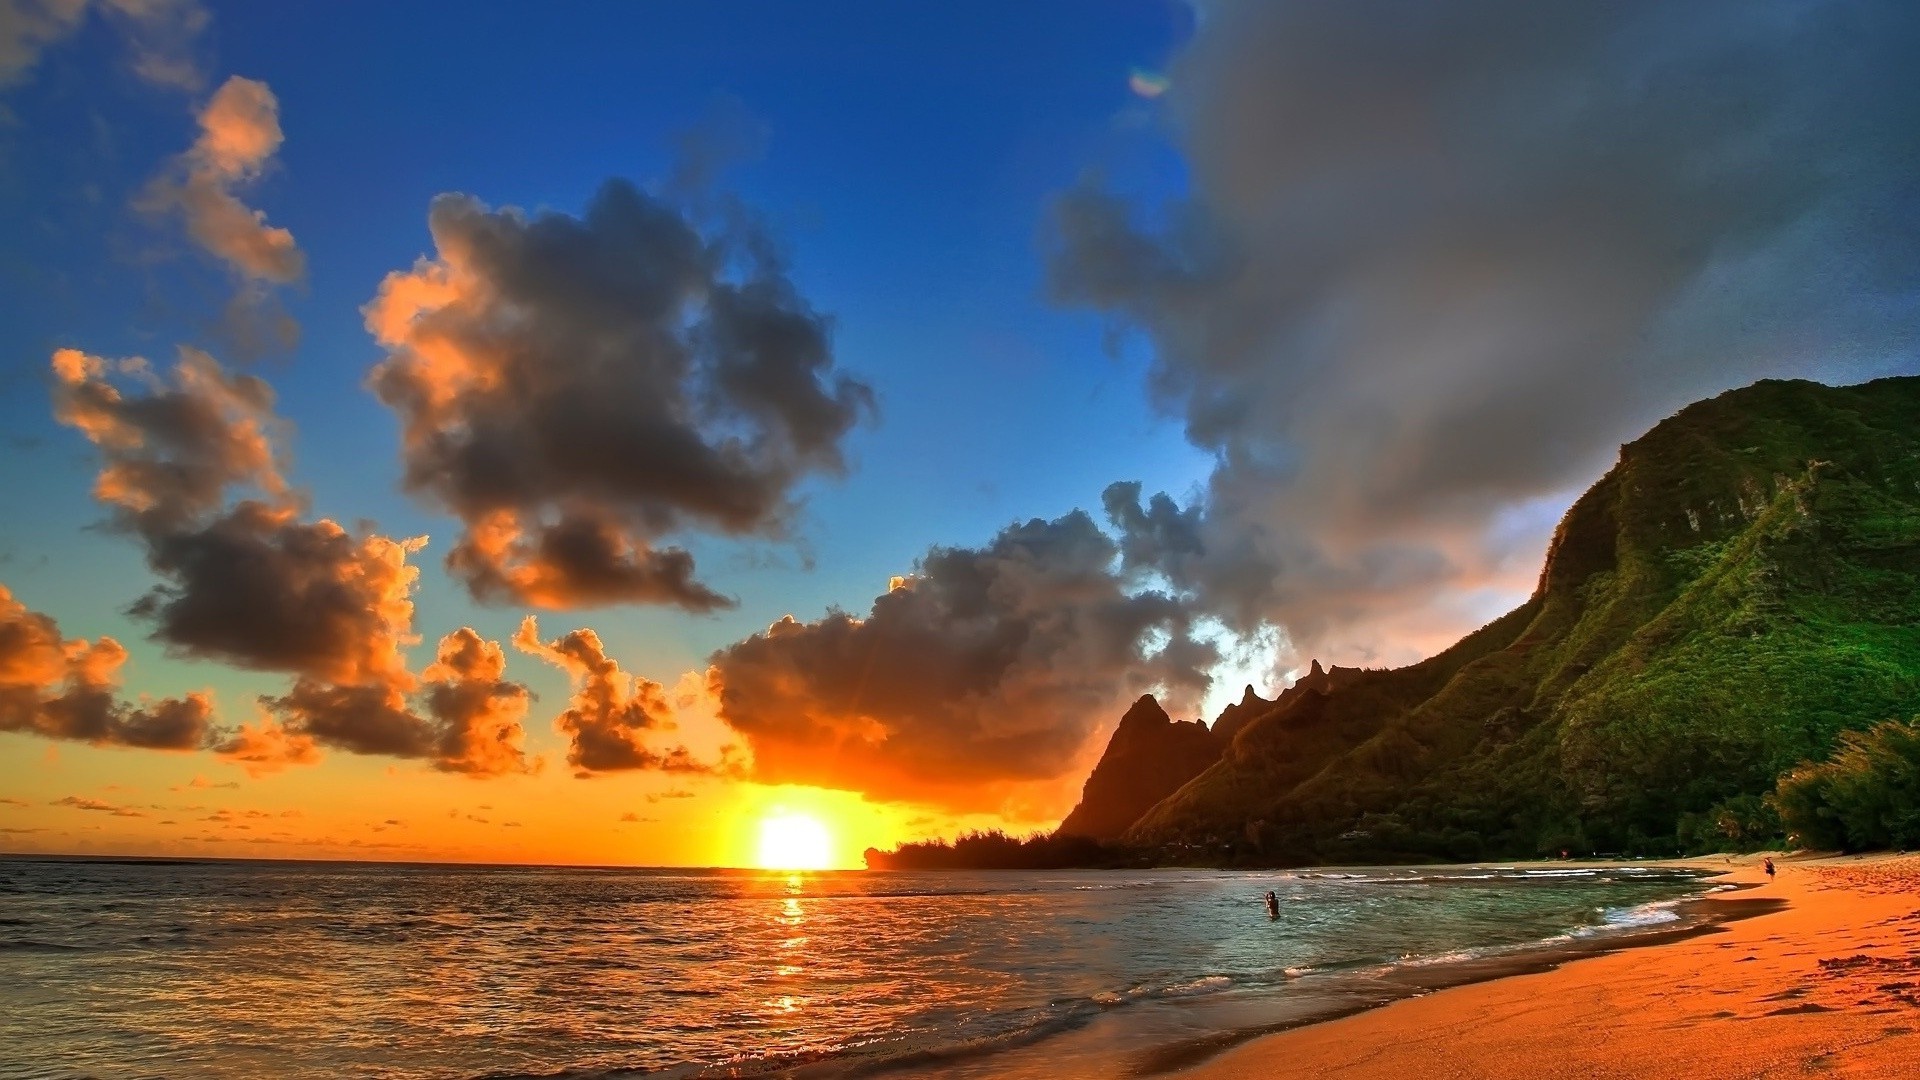 Wallpaper Beach Sunset 1080p For Desktop High Definition